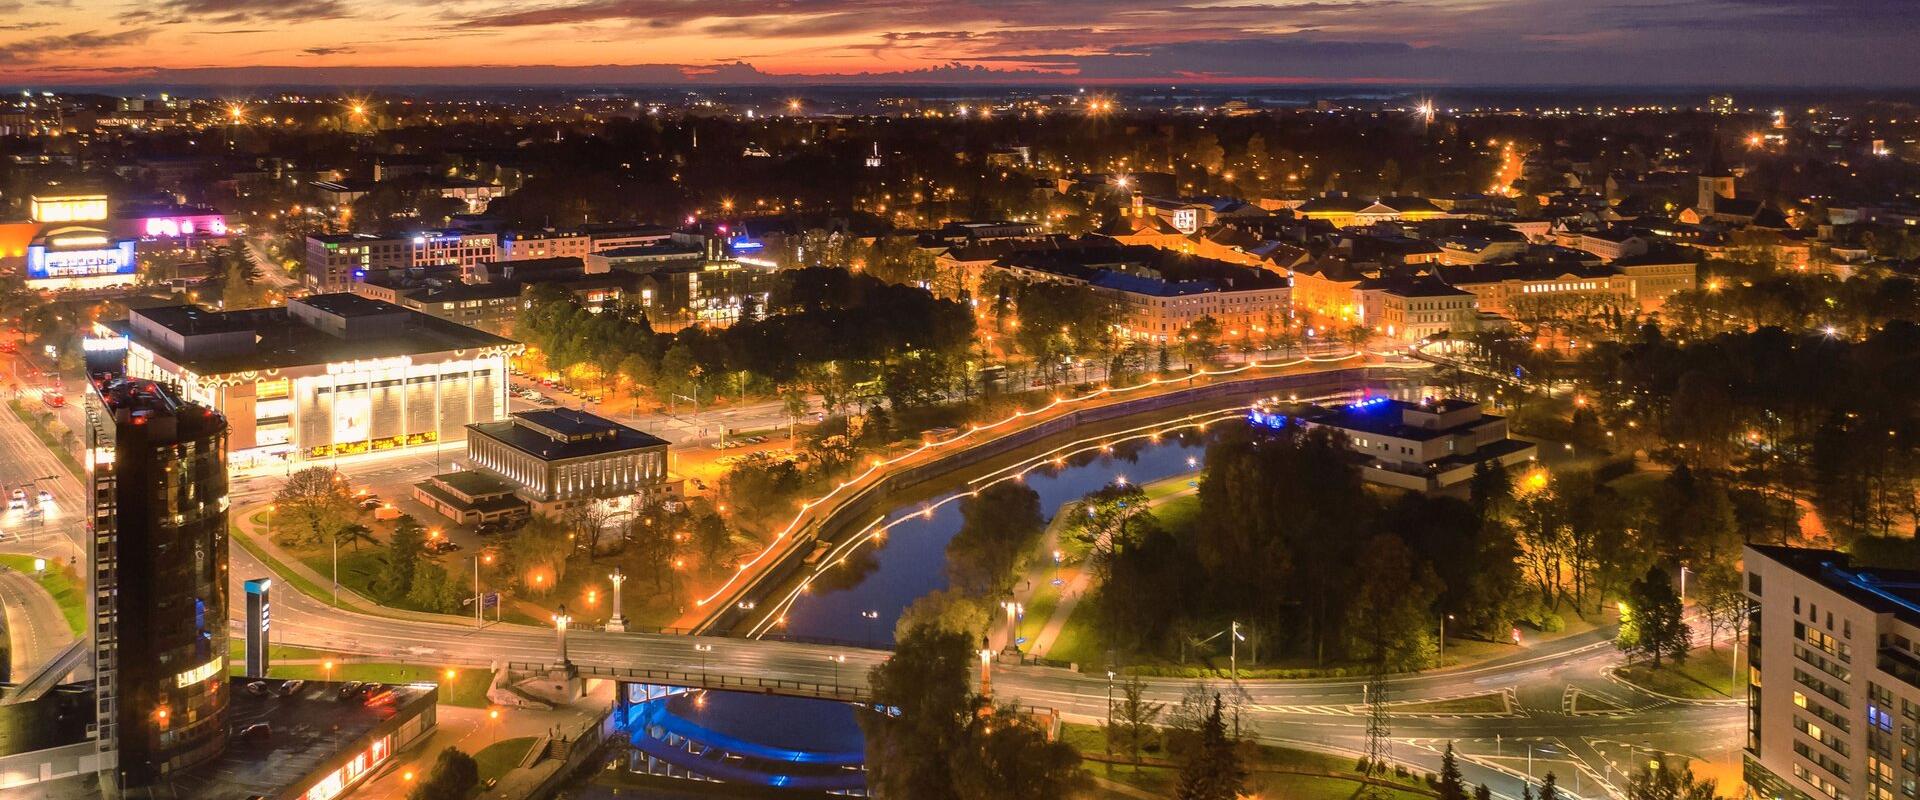 Ülejõe promenaad ja õhtune Tartu